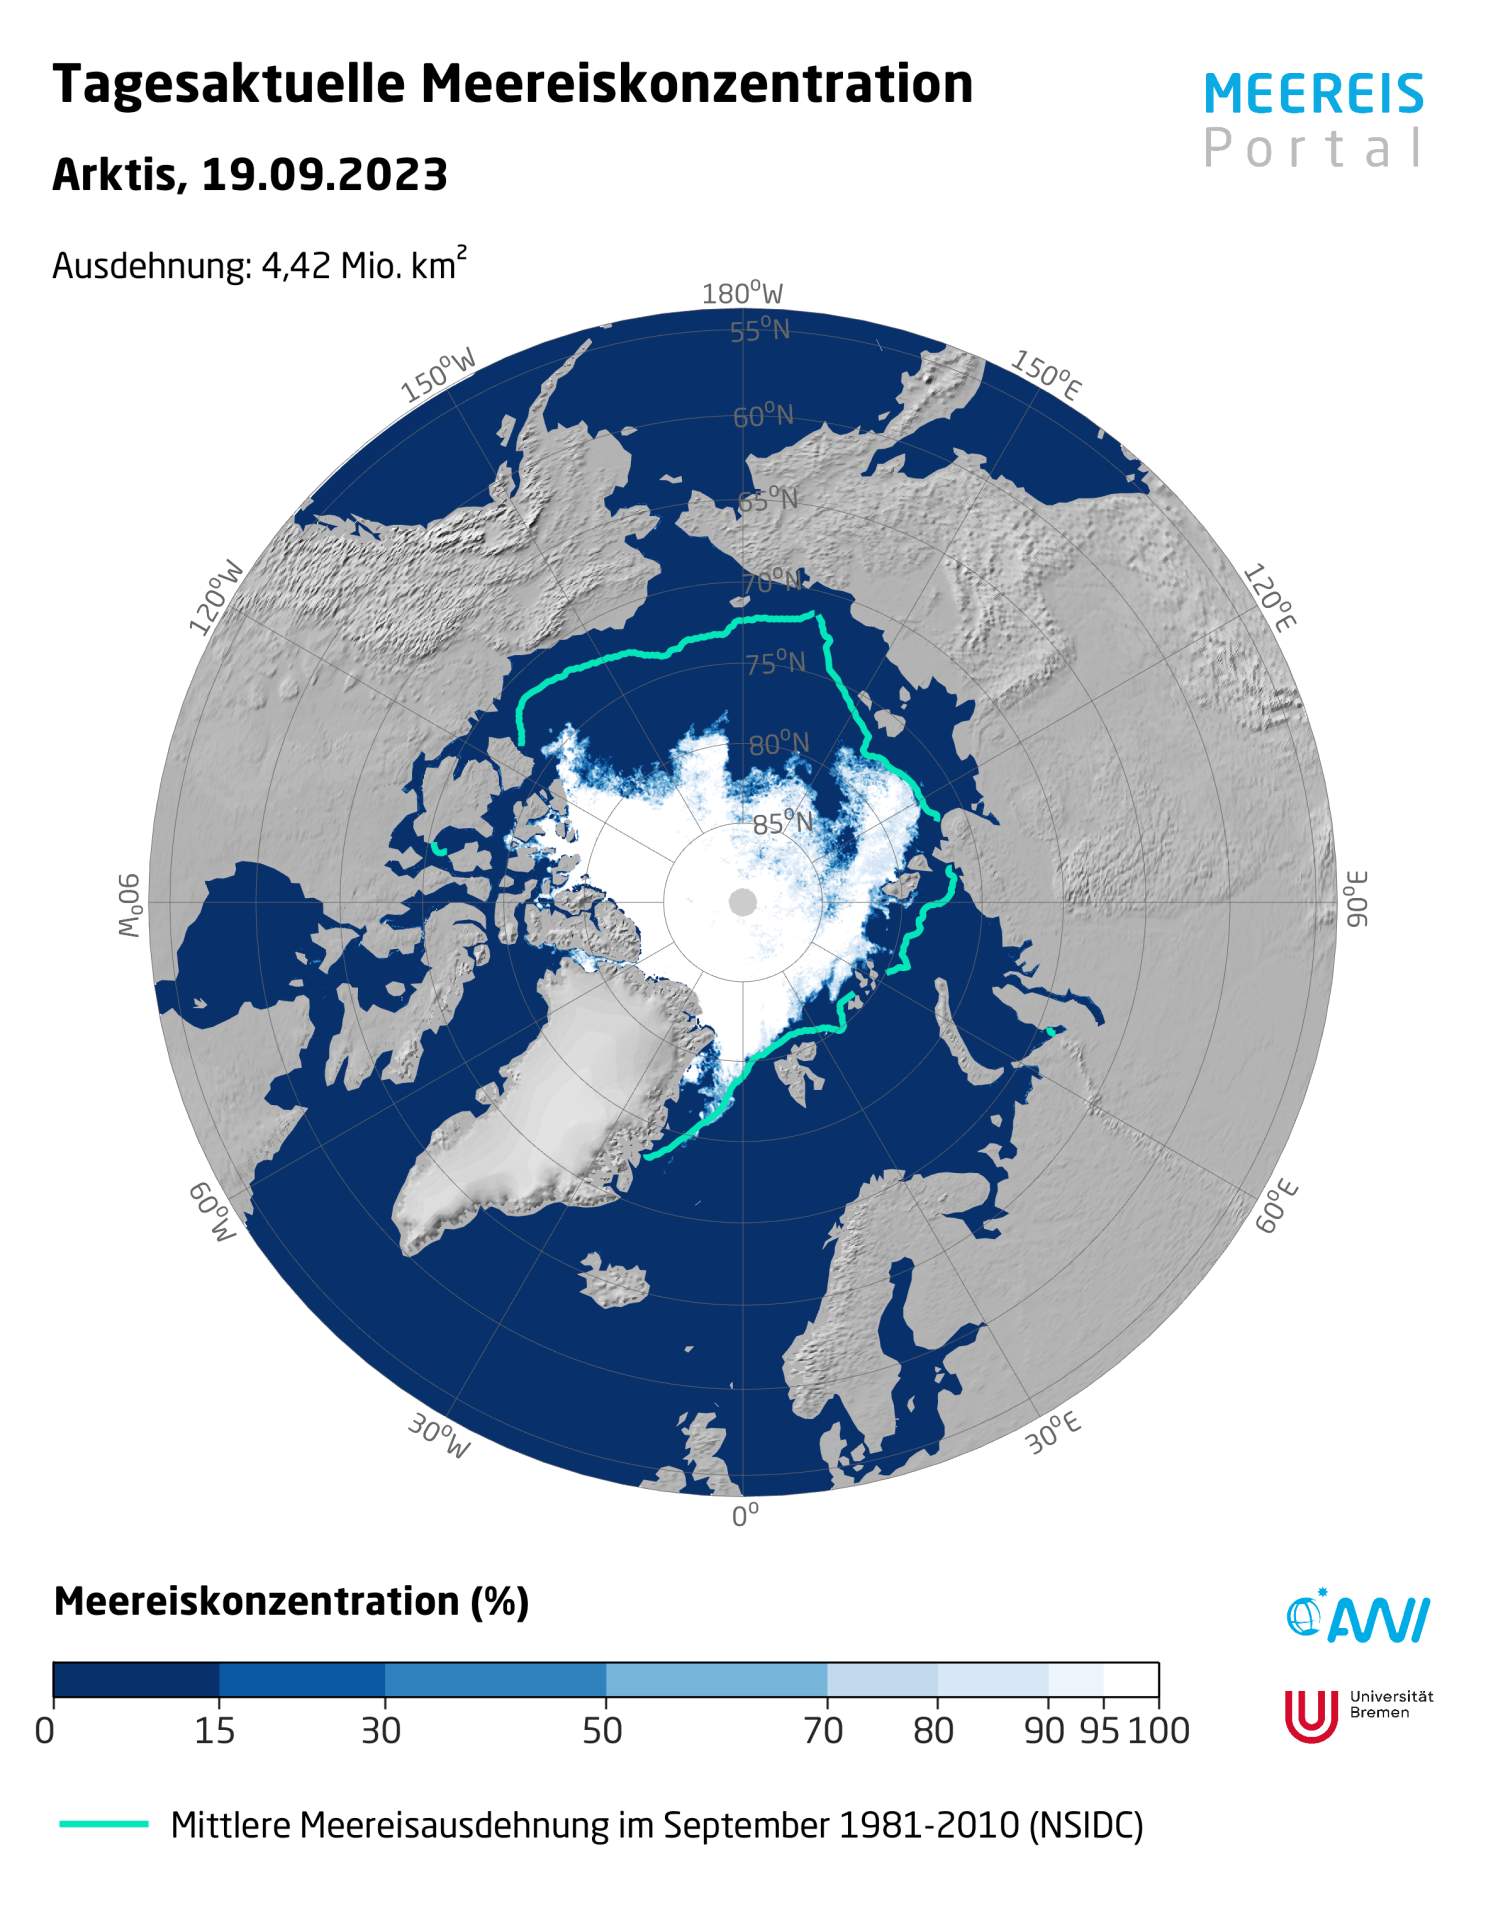 Fig. 1: Concentration de glace de mer dans l'Arctique par rapport à la norme; Source: Meereisportal